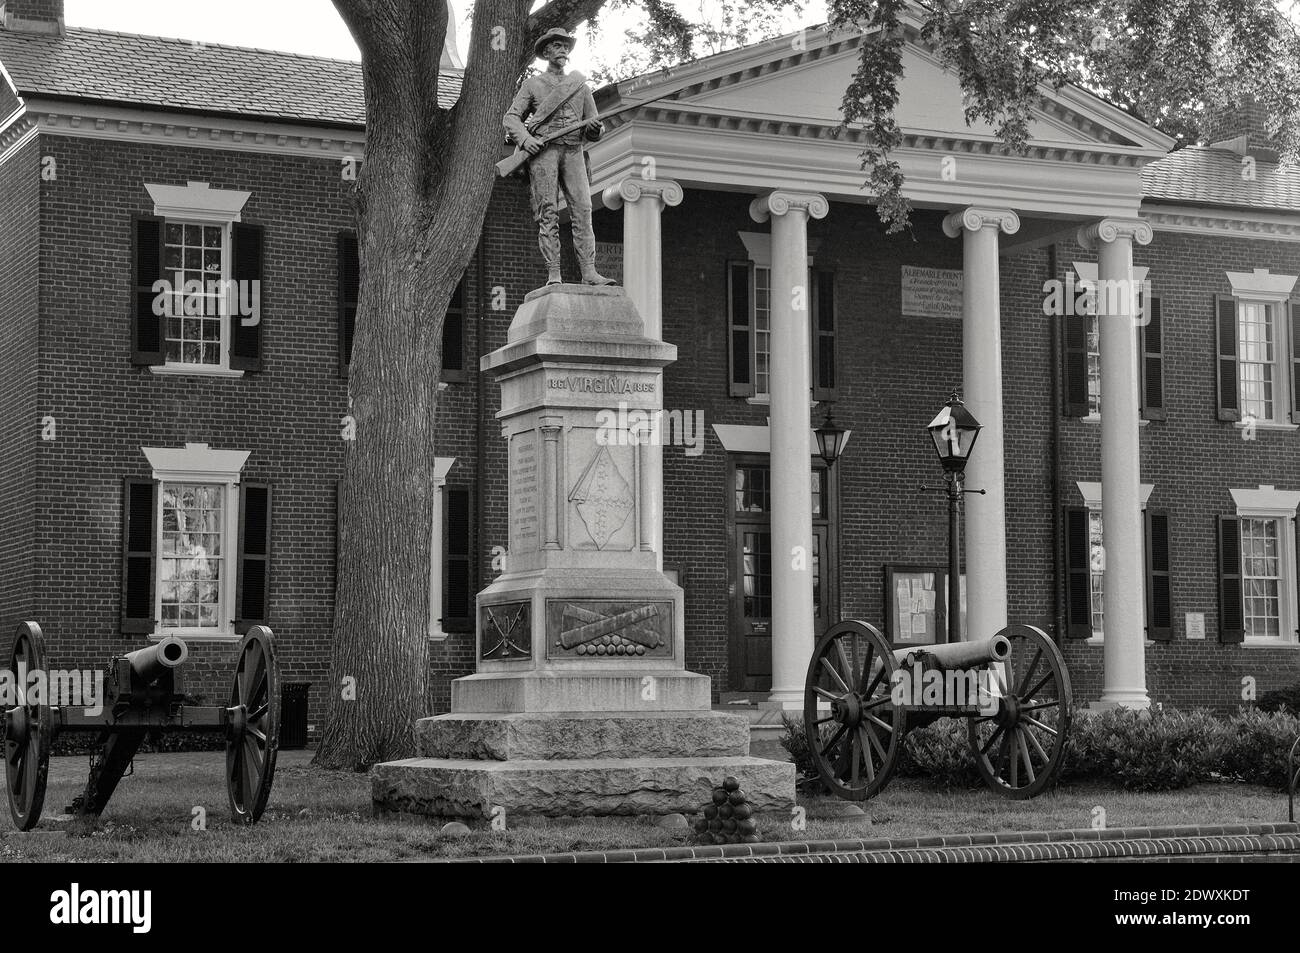 La statue commémorative Confederate maintenant enlevée avec des canons. Palais de justice du comté de Old Albemarle, Charlottesville, Virginie, États-Unis Banque D'Images